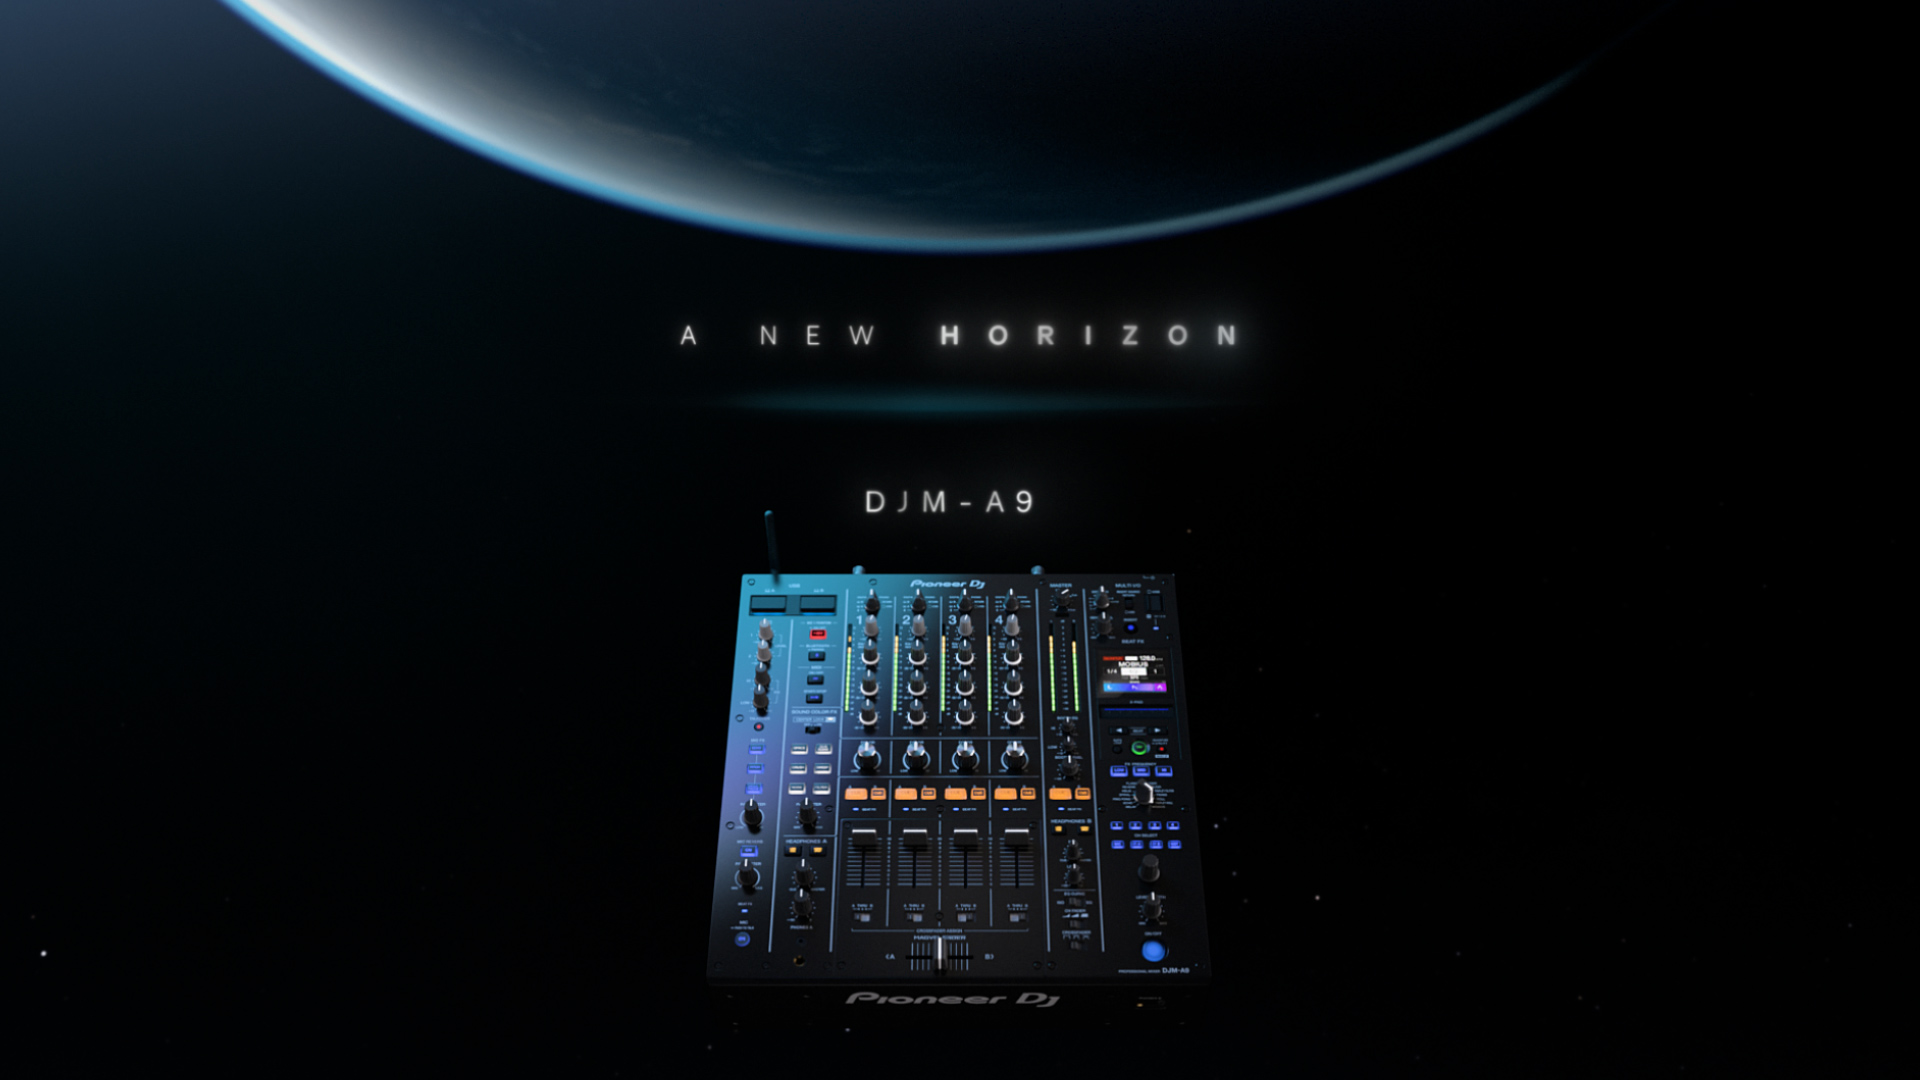 DJM-A9 - 4-channel professional DJ mixer (black)